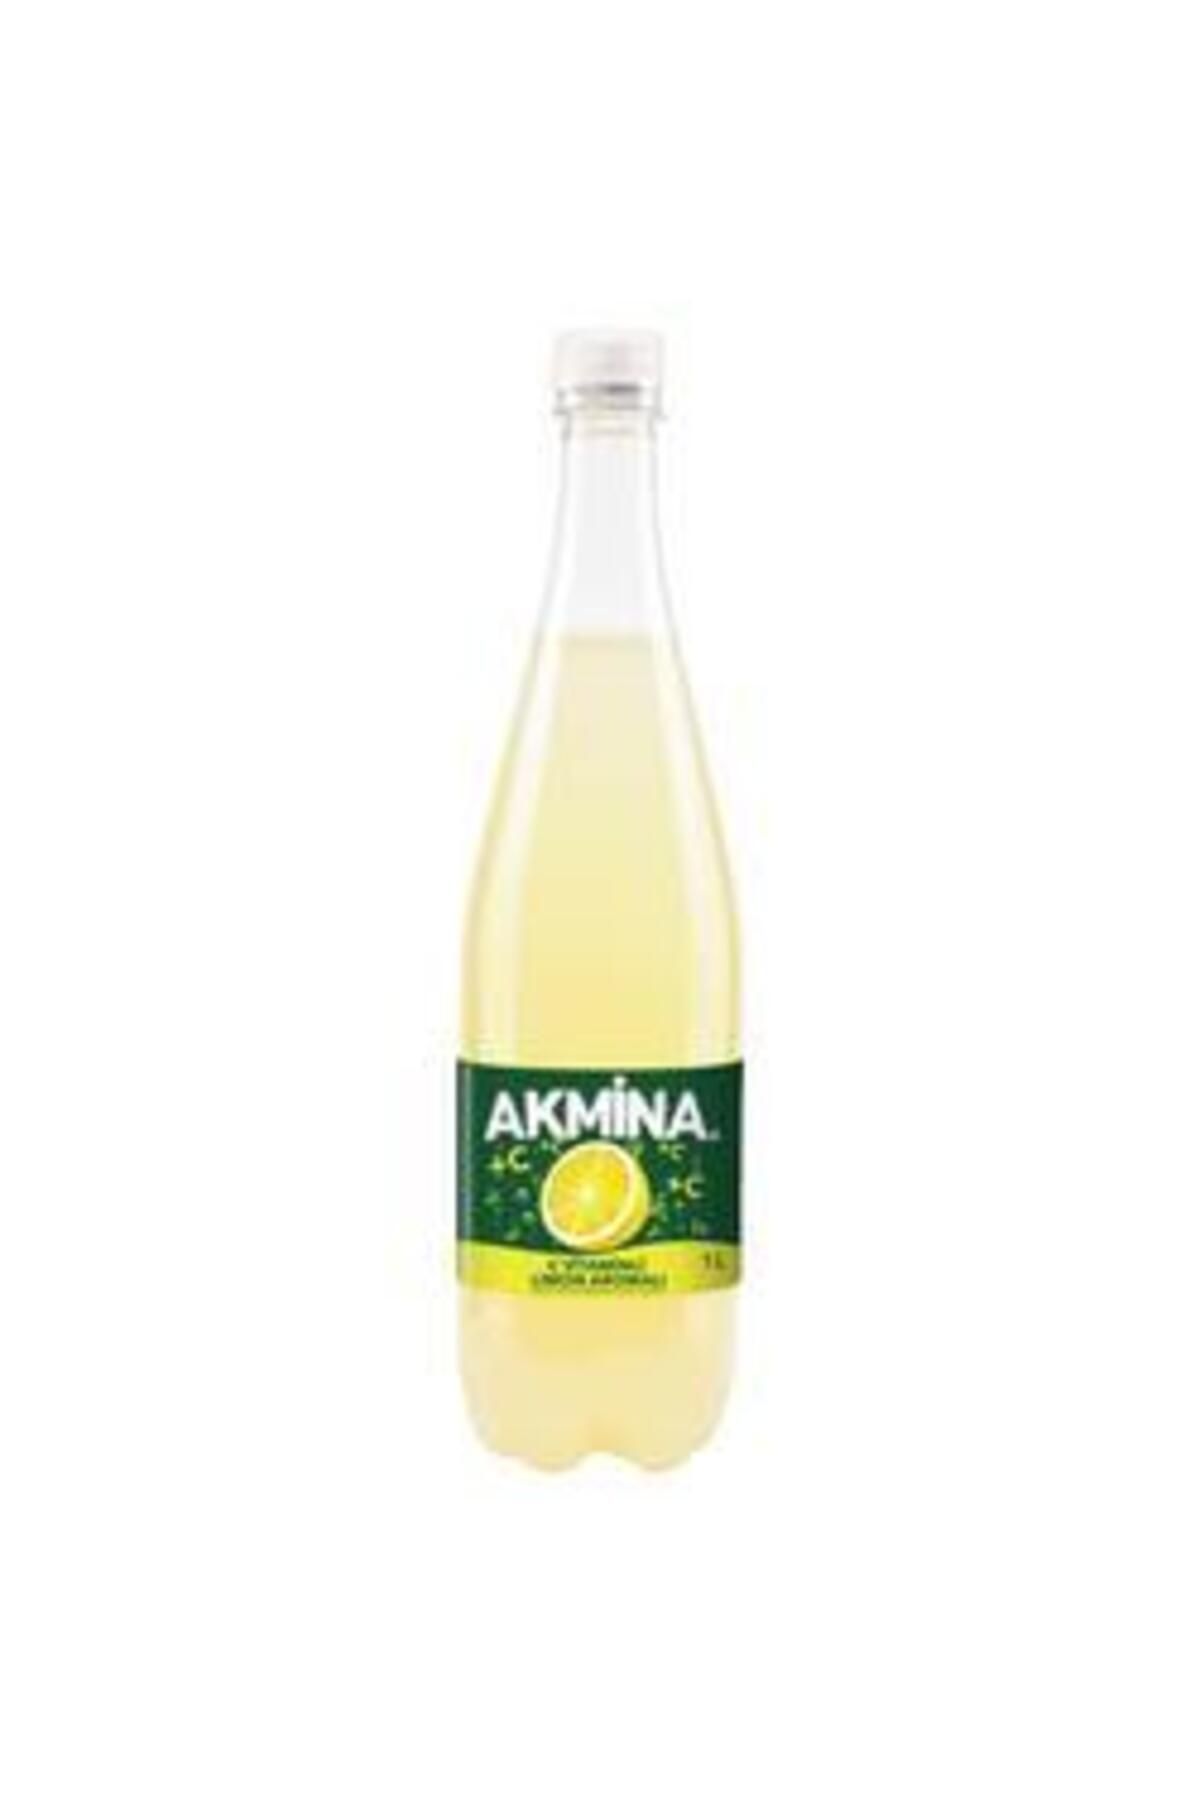 Akmina C Vit. Limonlu Maden Suyu 1 Lt. (MEYVELİ SODA) (6'LI)